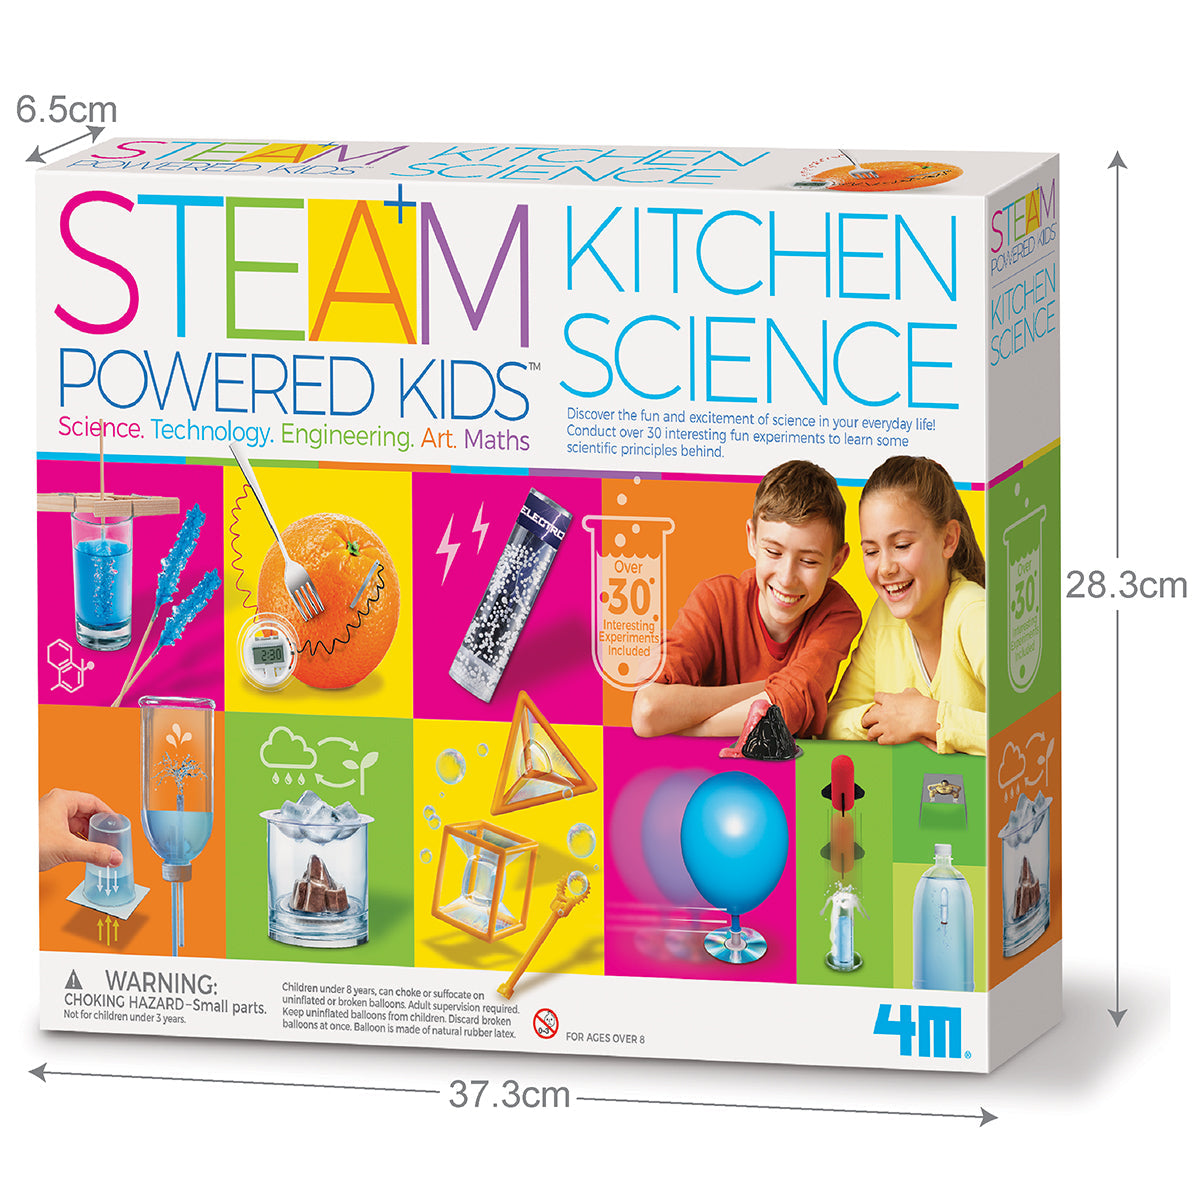 STEAM Powered Kids Kitchen Science